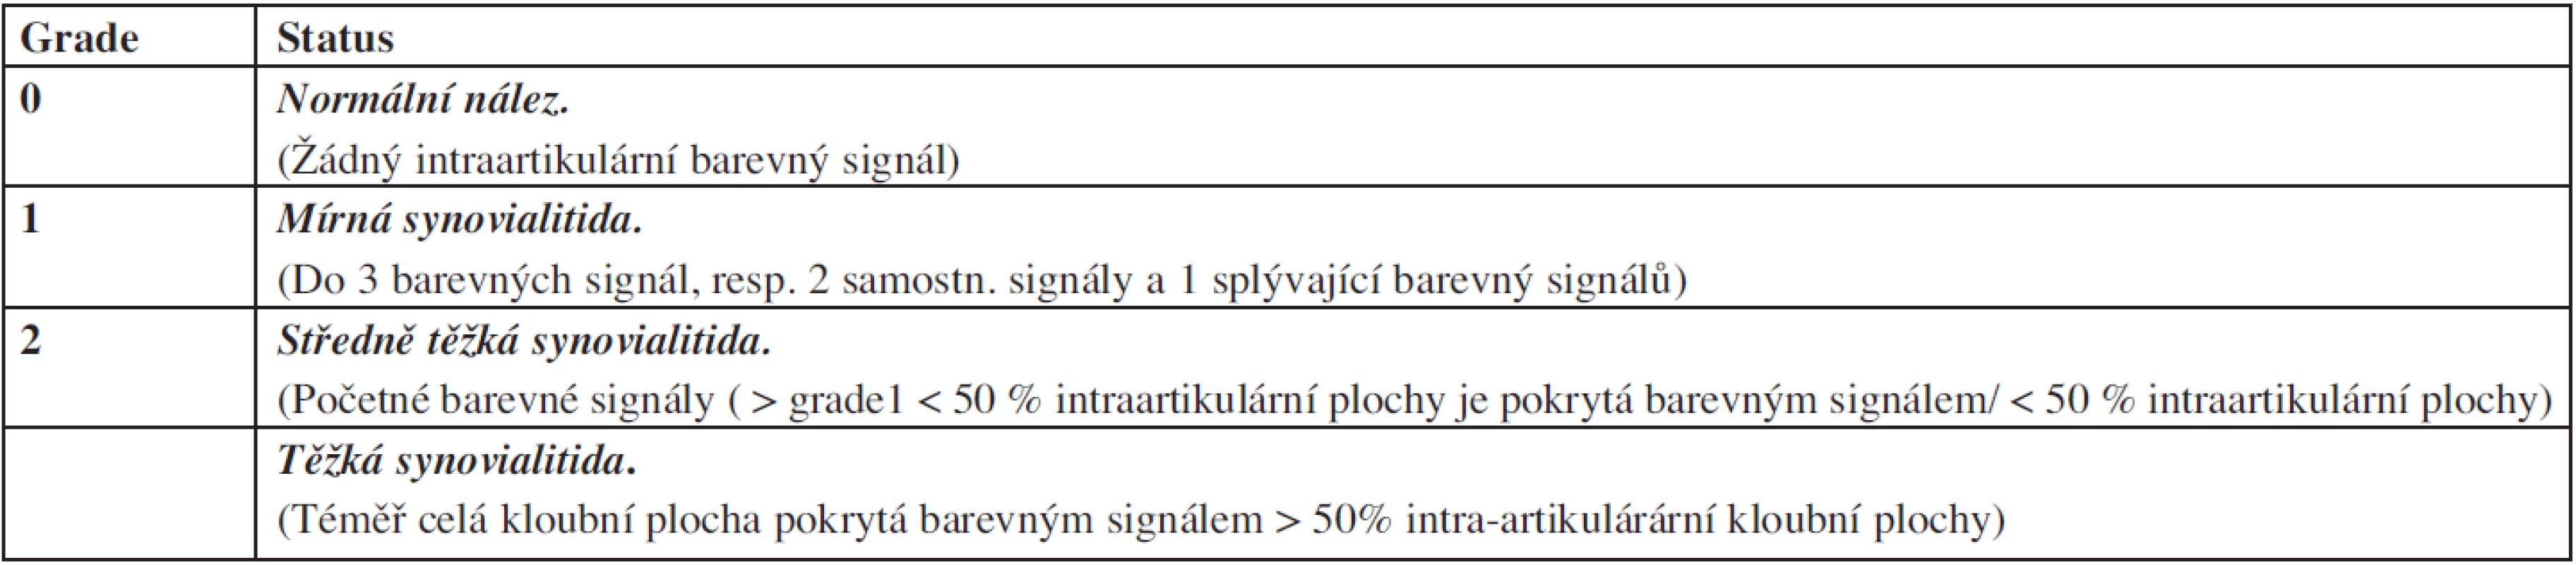 Semikvantitativní hodnocení synovialitidy podle PD.